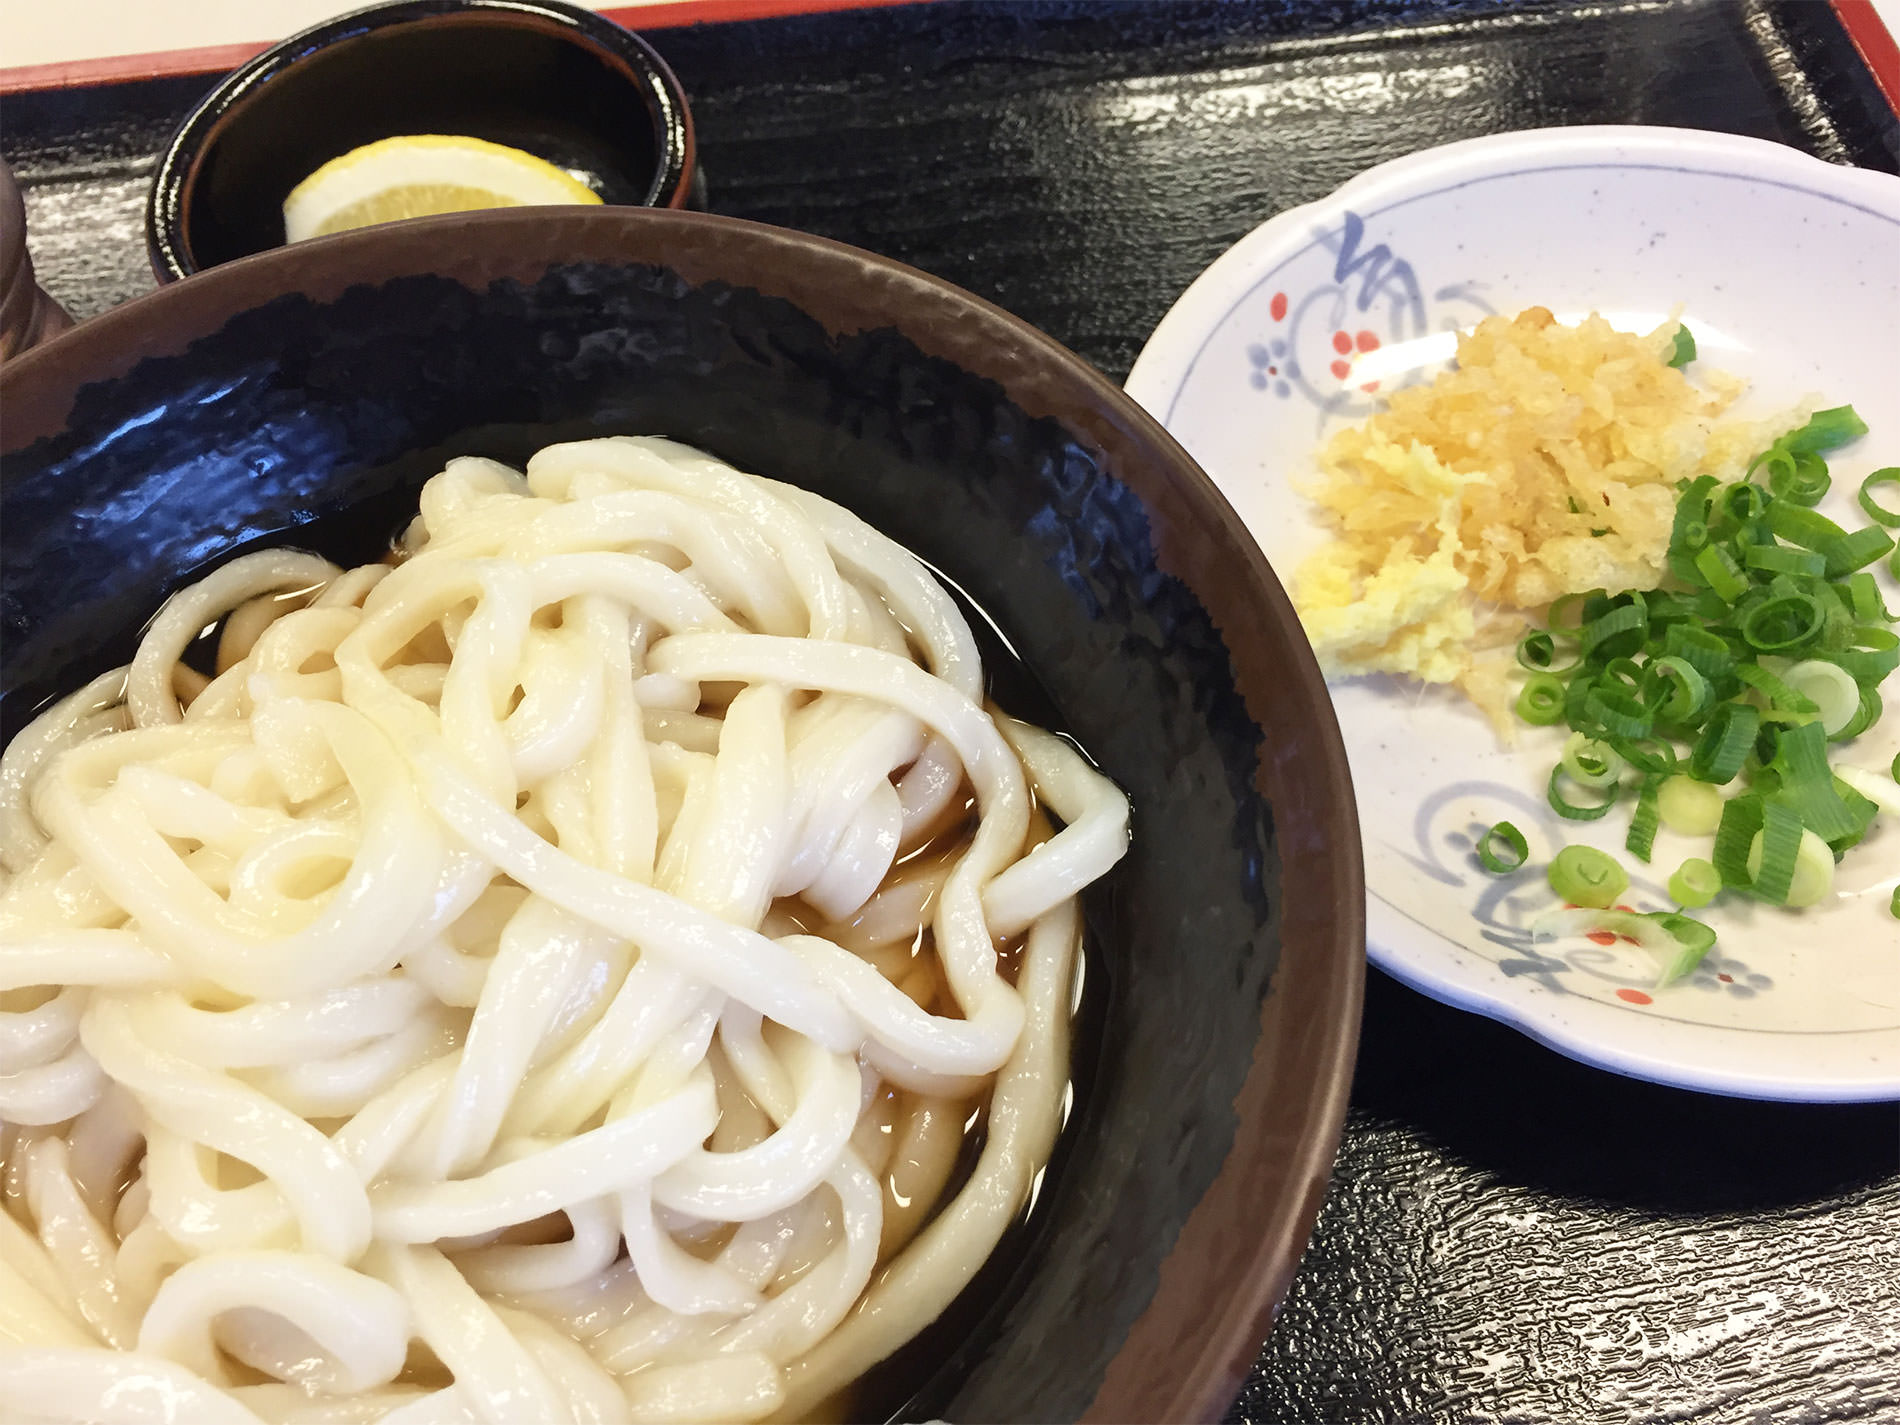 高松旅行と讃岐うどんと | Takamatsu trip and Sanuki udon in 2015